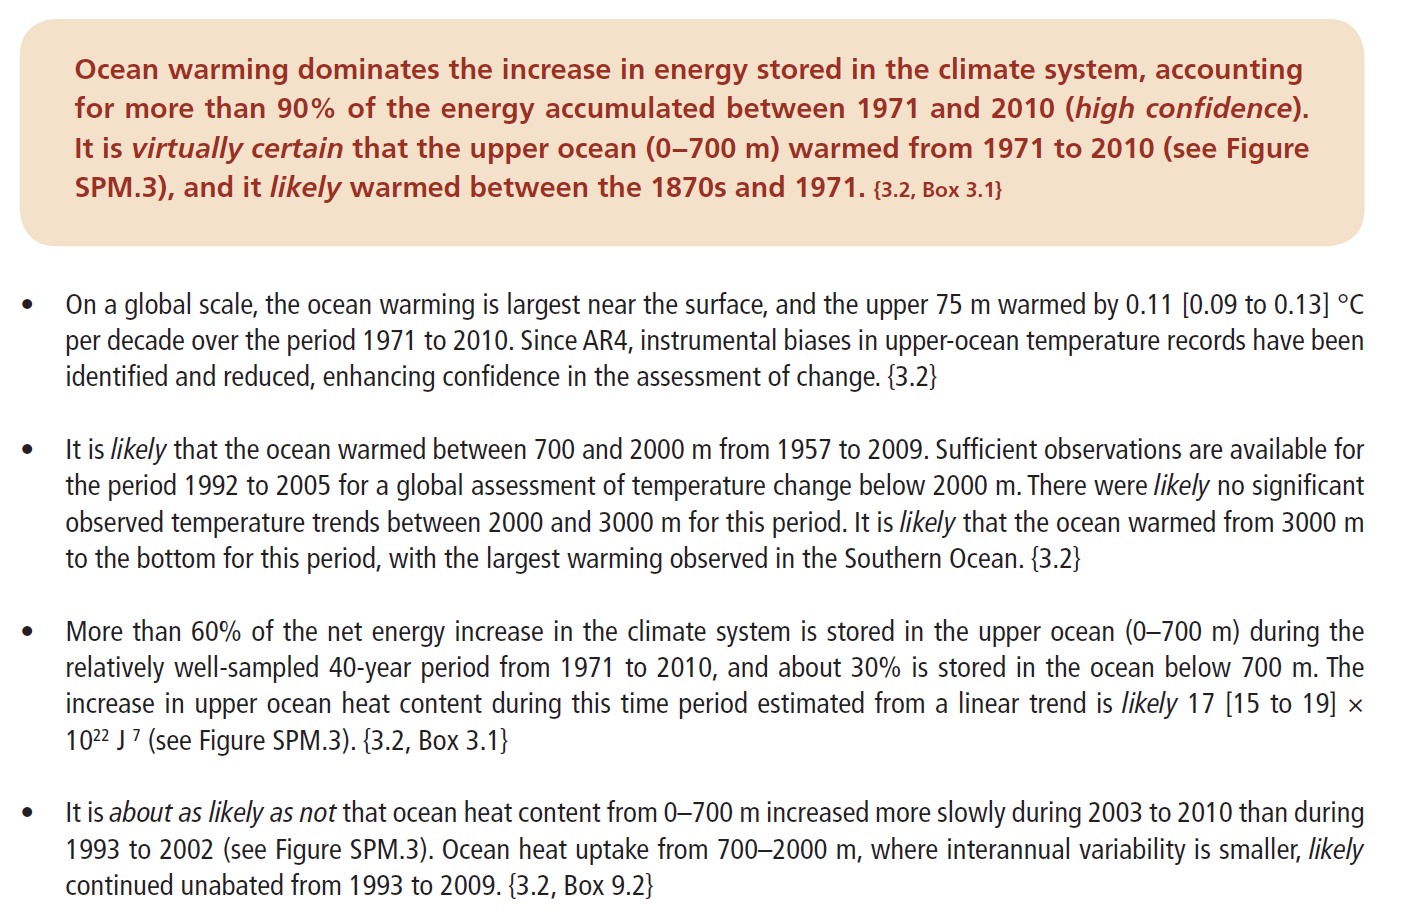 Zusammenfassung: Der IPCC geht davon aus, dass sich die oberen 75 m der Ozeane im Zeitraum zwischen 1971 und 2010 um durchschnittlich 0,11 C/Jahr erwärmt haben.